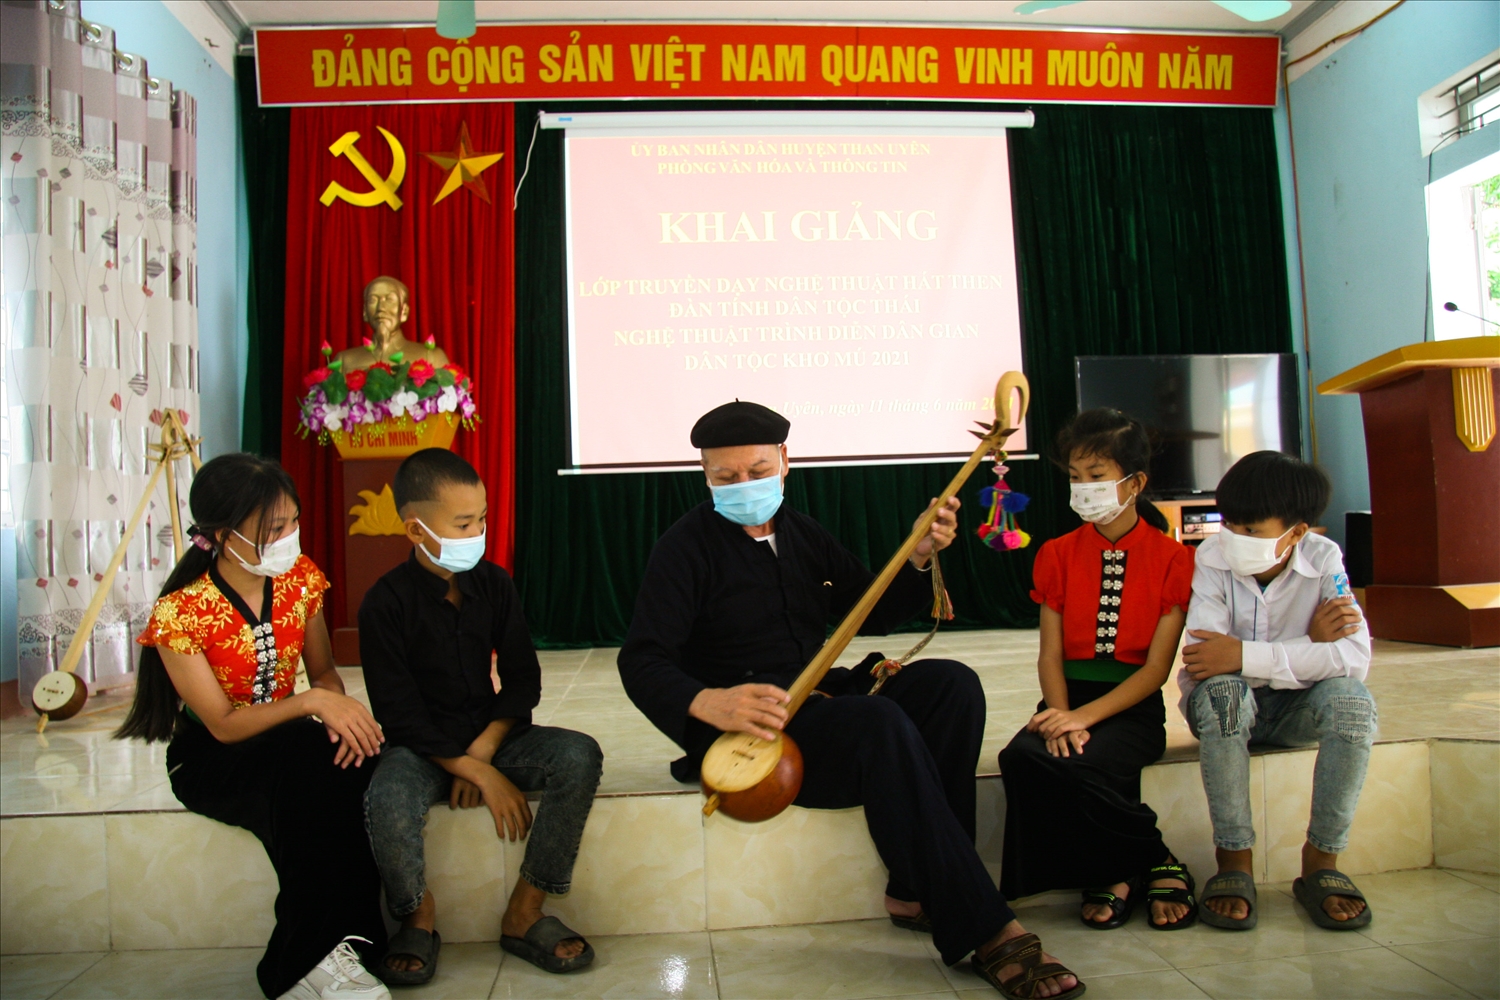 Ngoài vai trò là cố vấn của CLB đàn Tính - hát Then xã Mường Cang (Than Uyên Lai Châu), nghệ nhân Ưu tú Lò Văn Sơi thường bồi dưỡng các thế hệ kế cận về nghệ thuật chơi Tính tẩu.